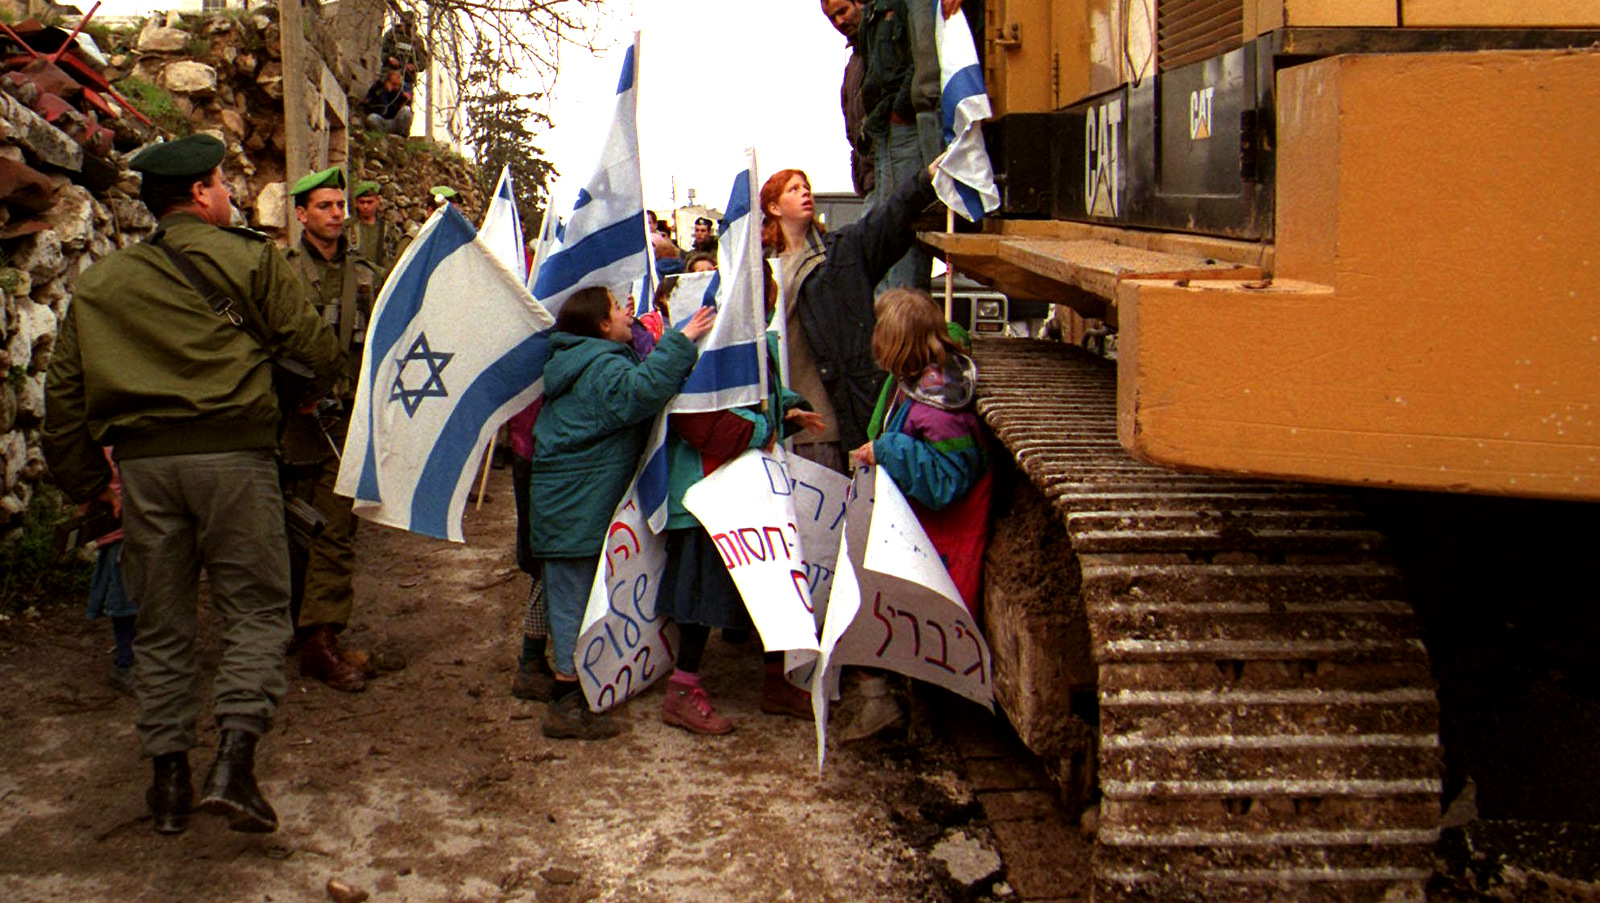 Los colonos israelíes intentan detener a los trabajadores palestinos en una excavadora en Hebrón, preparando el trabajo para una nueva fundación en la calle Shuhada, 18 de marzo de 1997. (AP / Nasser Shiyoukhi)